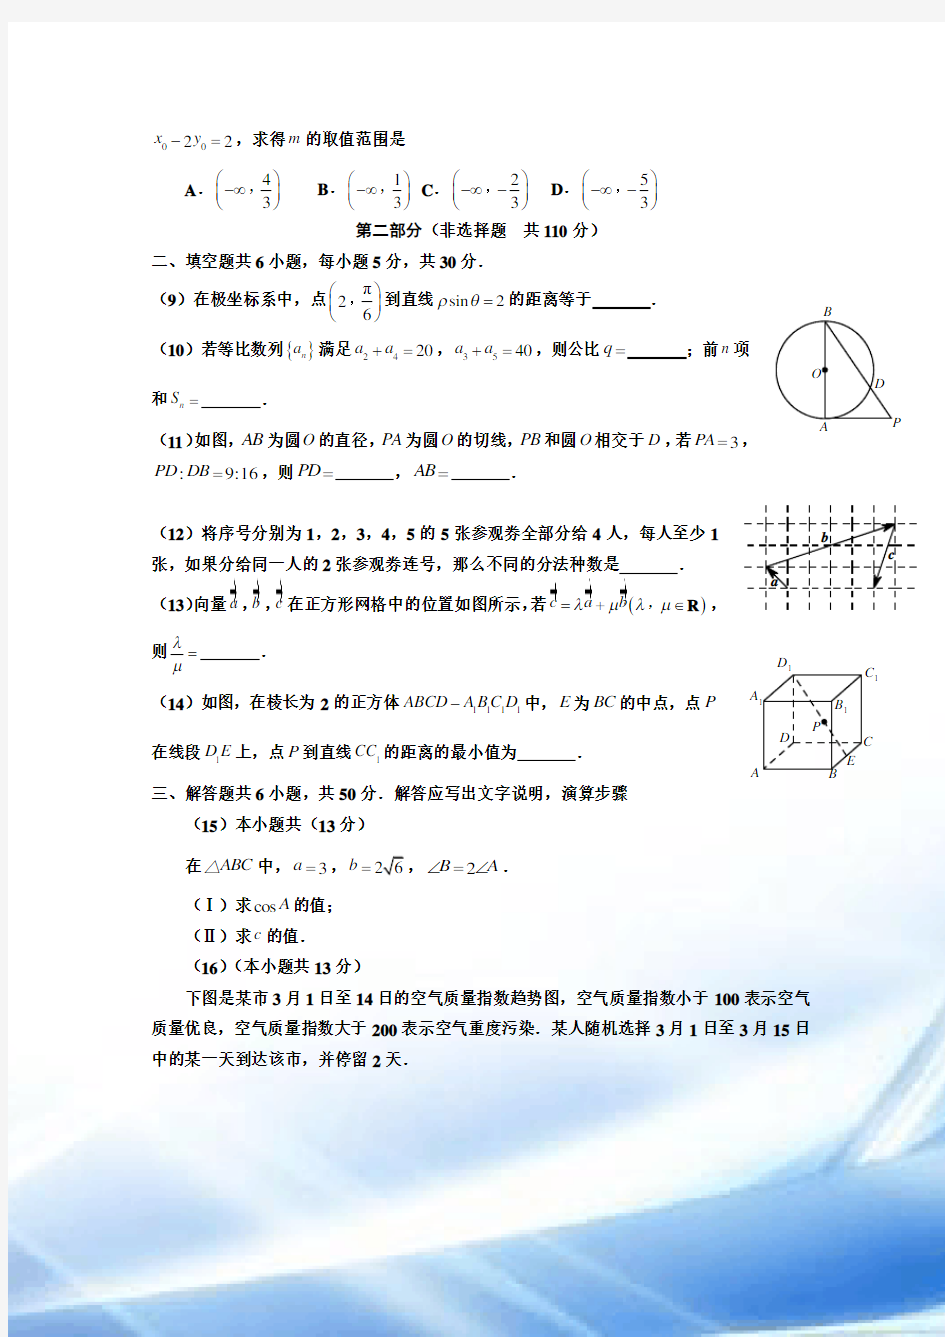 2013年北京高考理科数学试题及答案